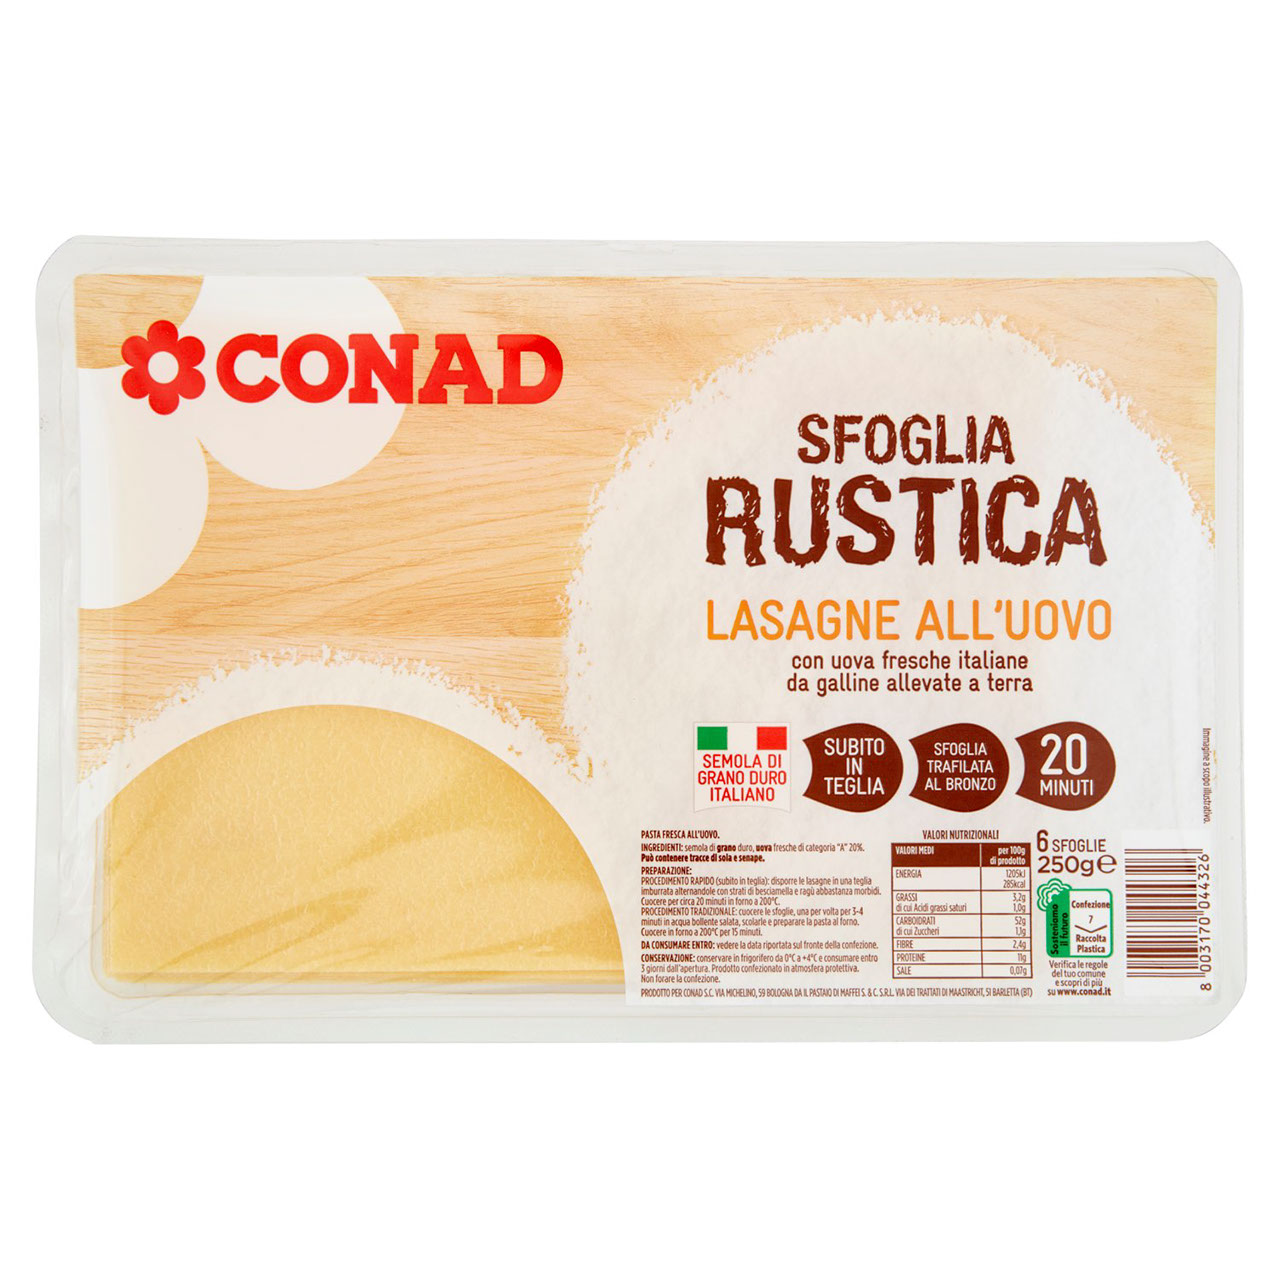 Sfoglia Rustica all'uovo Conad in vendita online